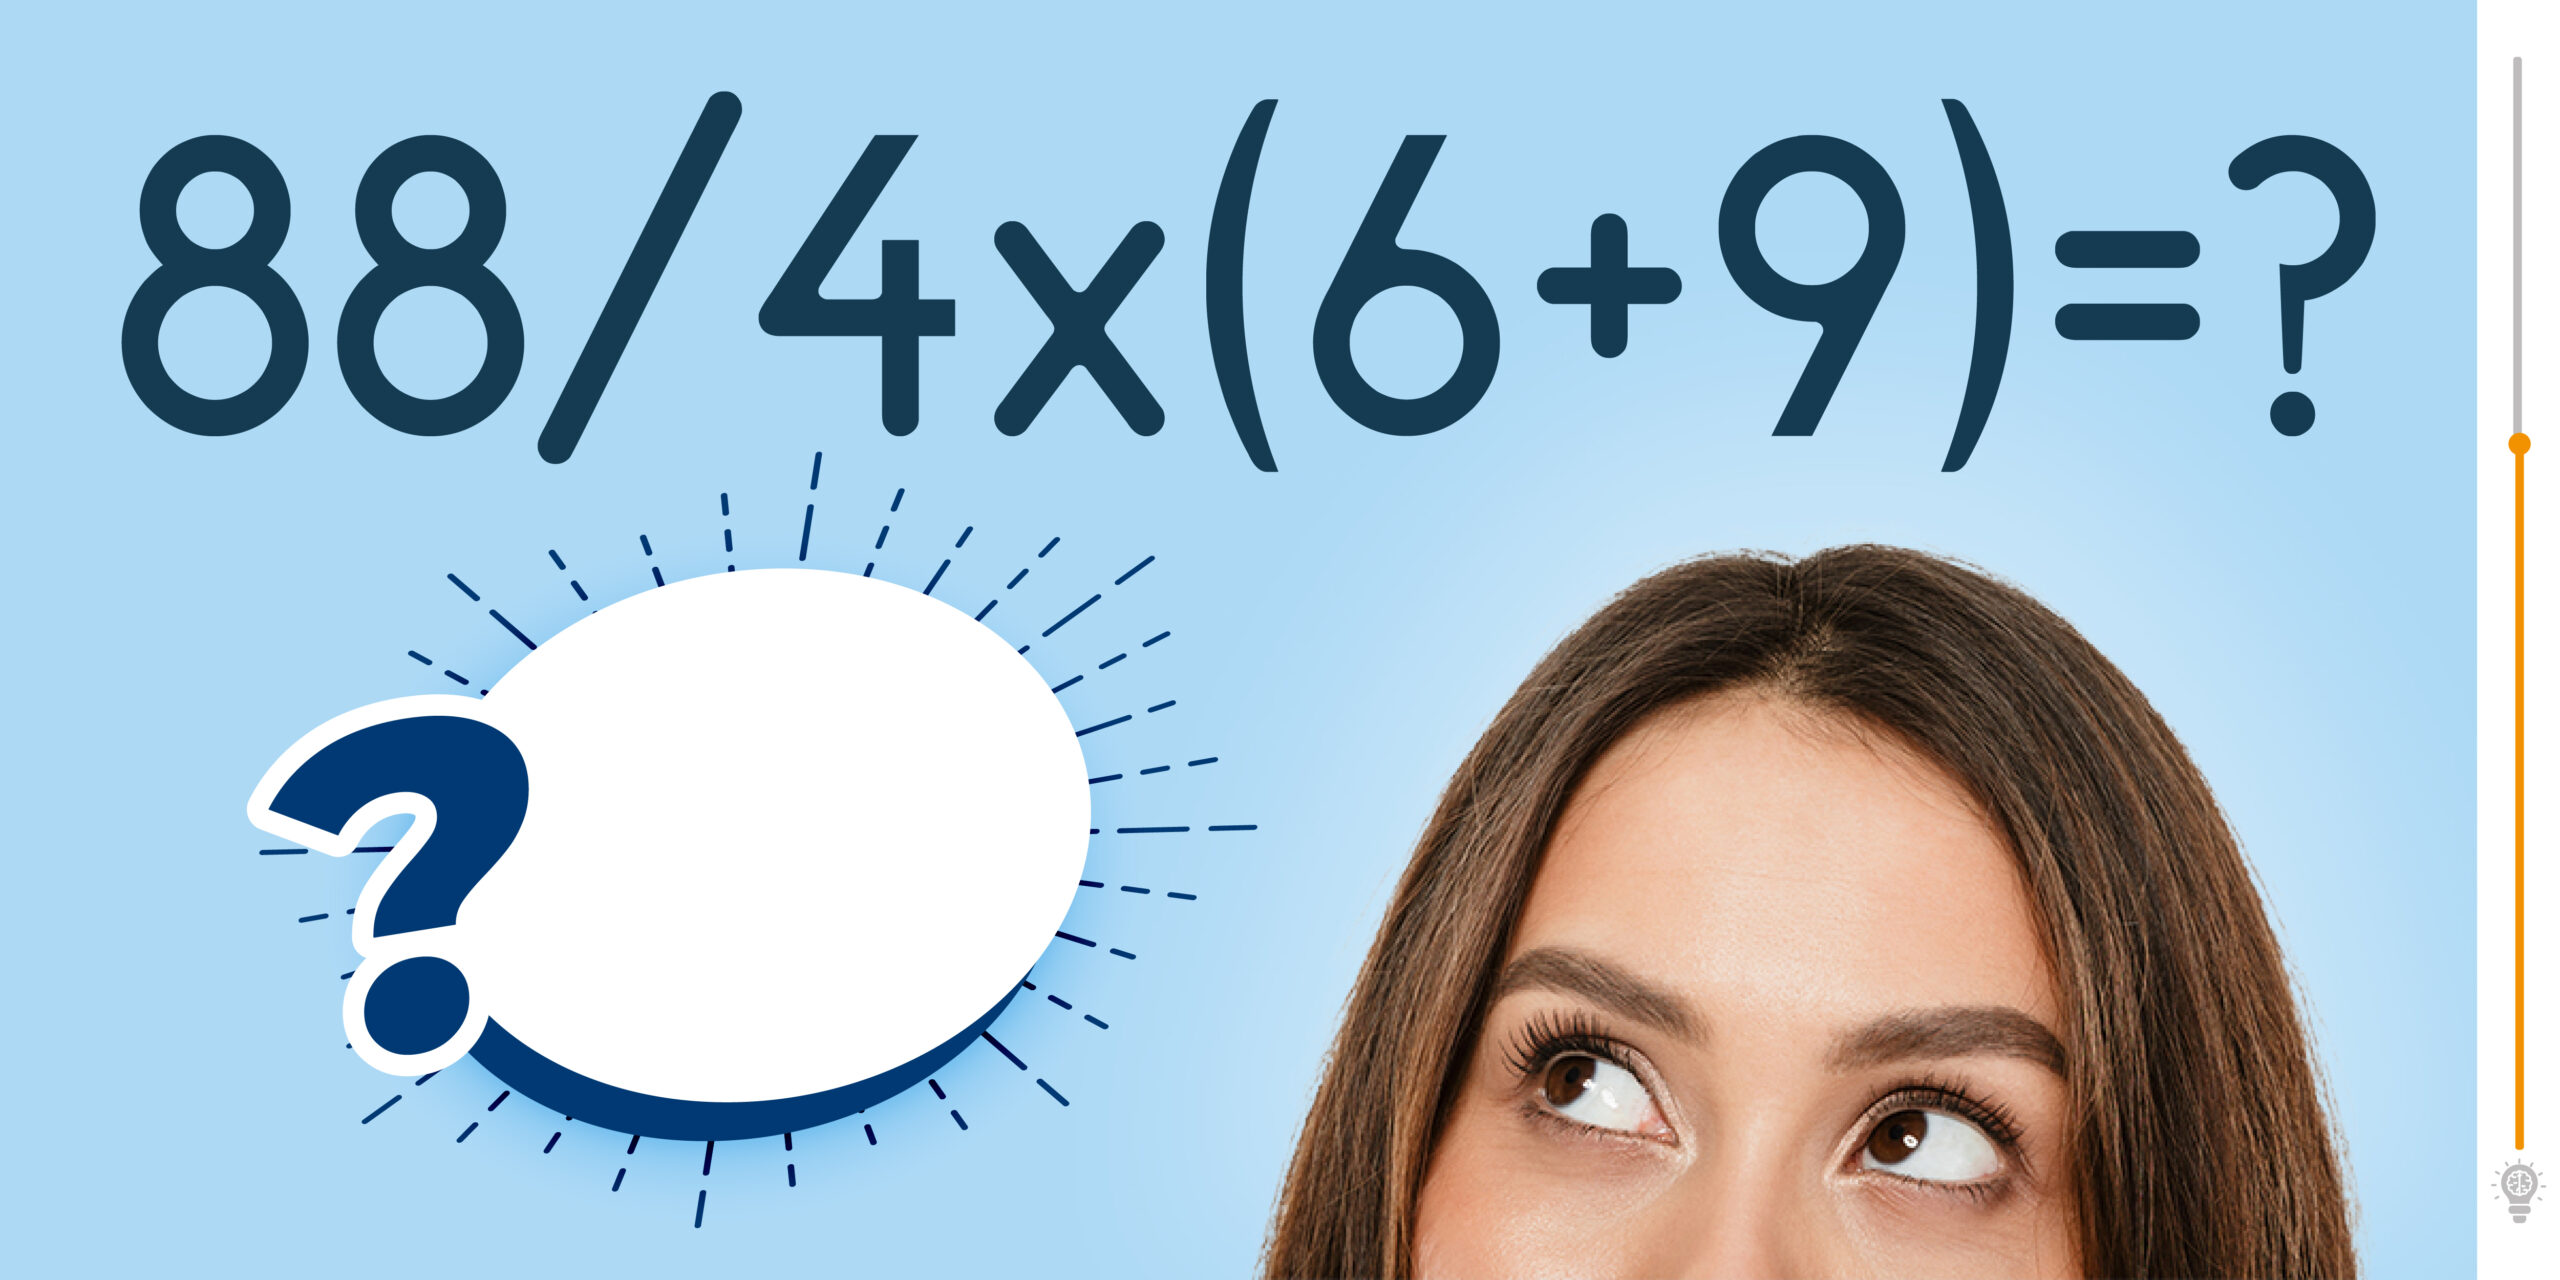 Test del QI: hai 20 secondi per risolvere questo rapido quiz di matematica!